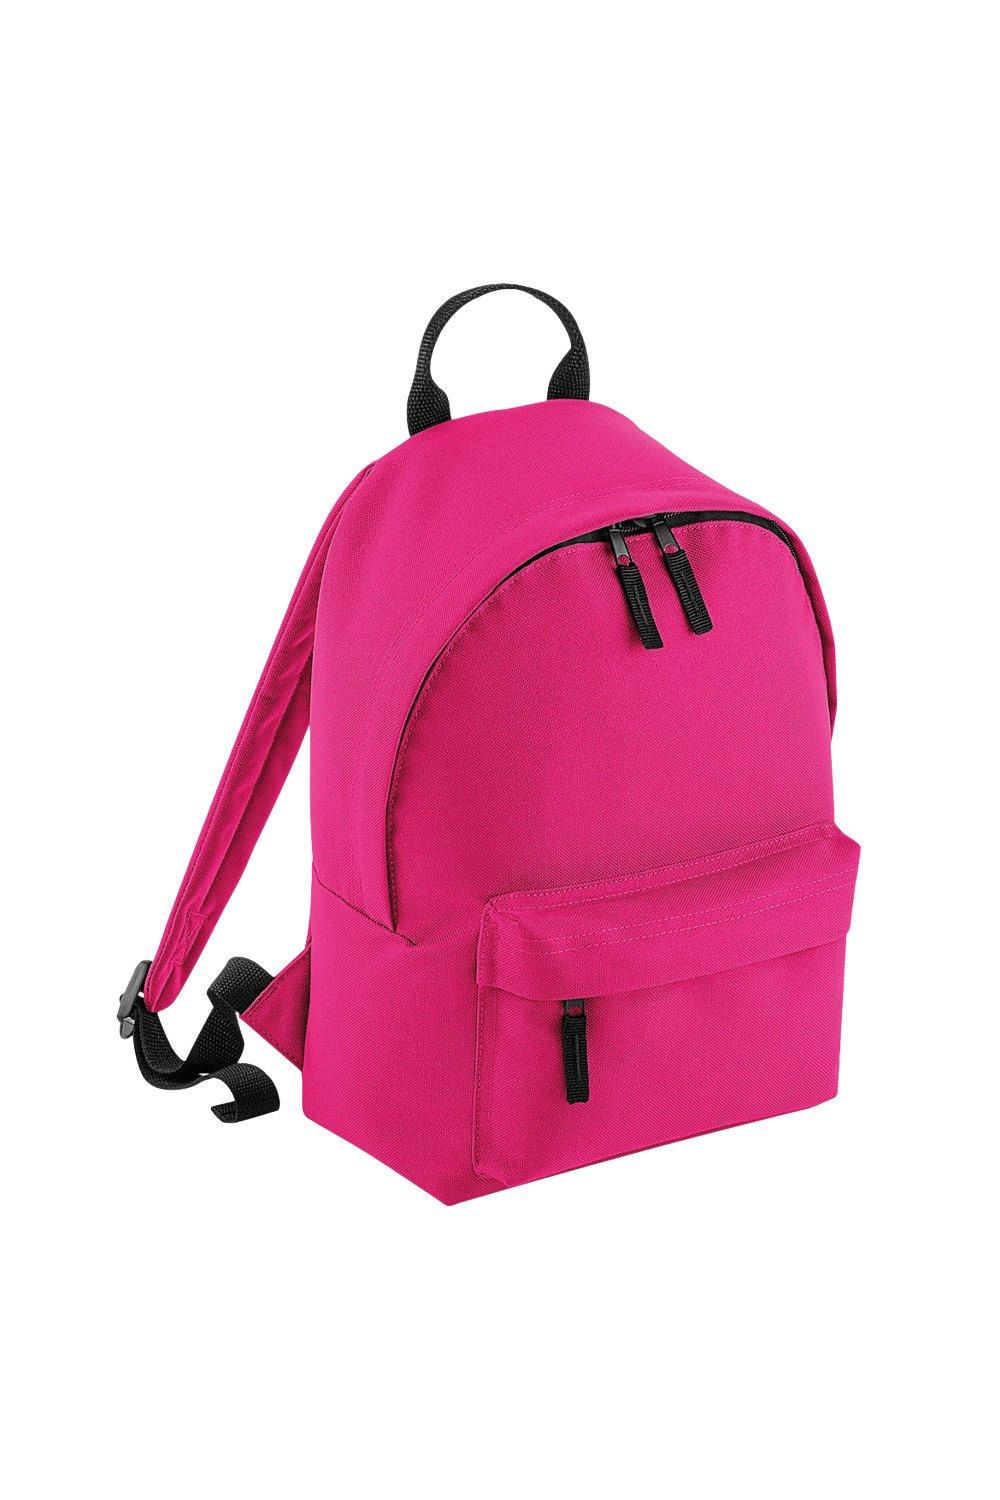 Модный мини-рюкзак Bagbase, розовый